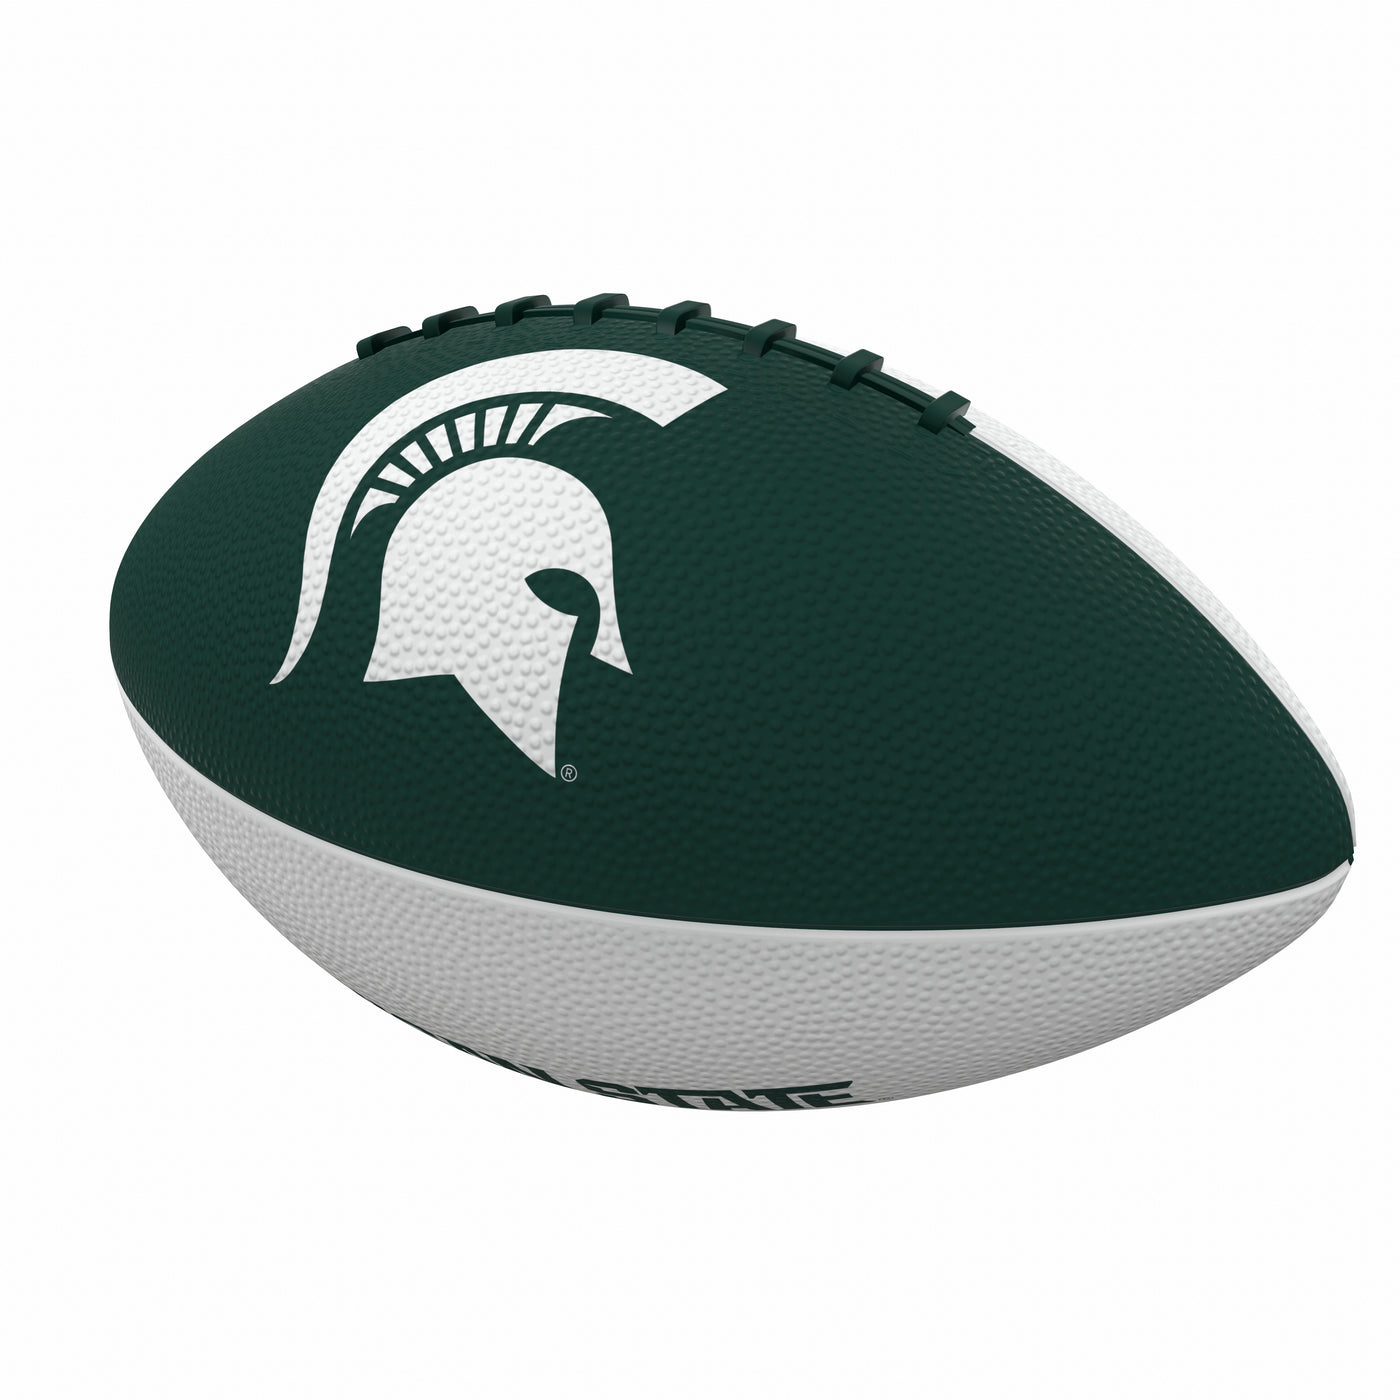 Michigan State Pinwheel Logo Junior Size Rubber Football